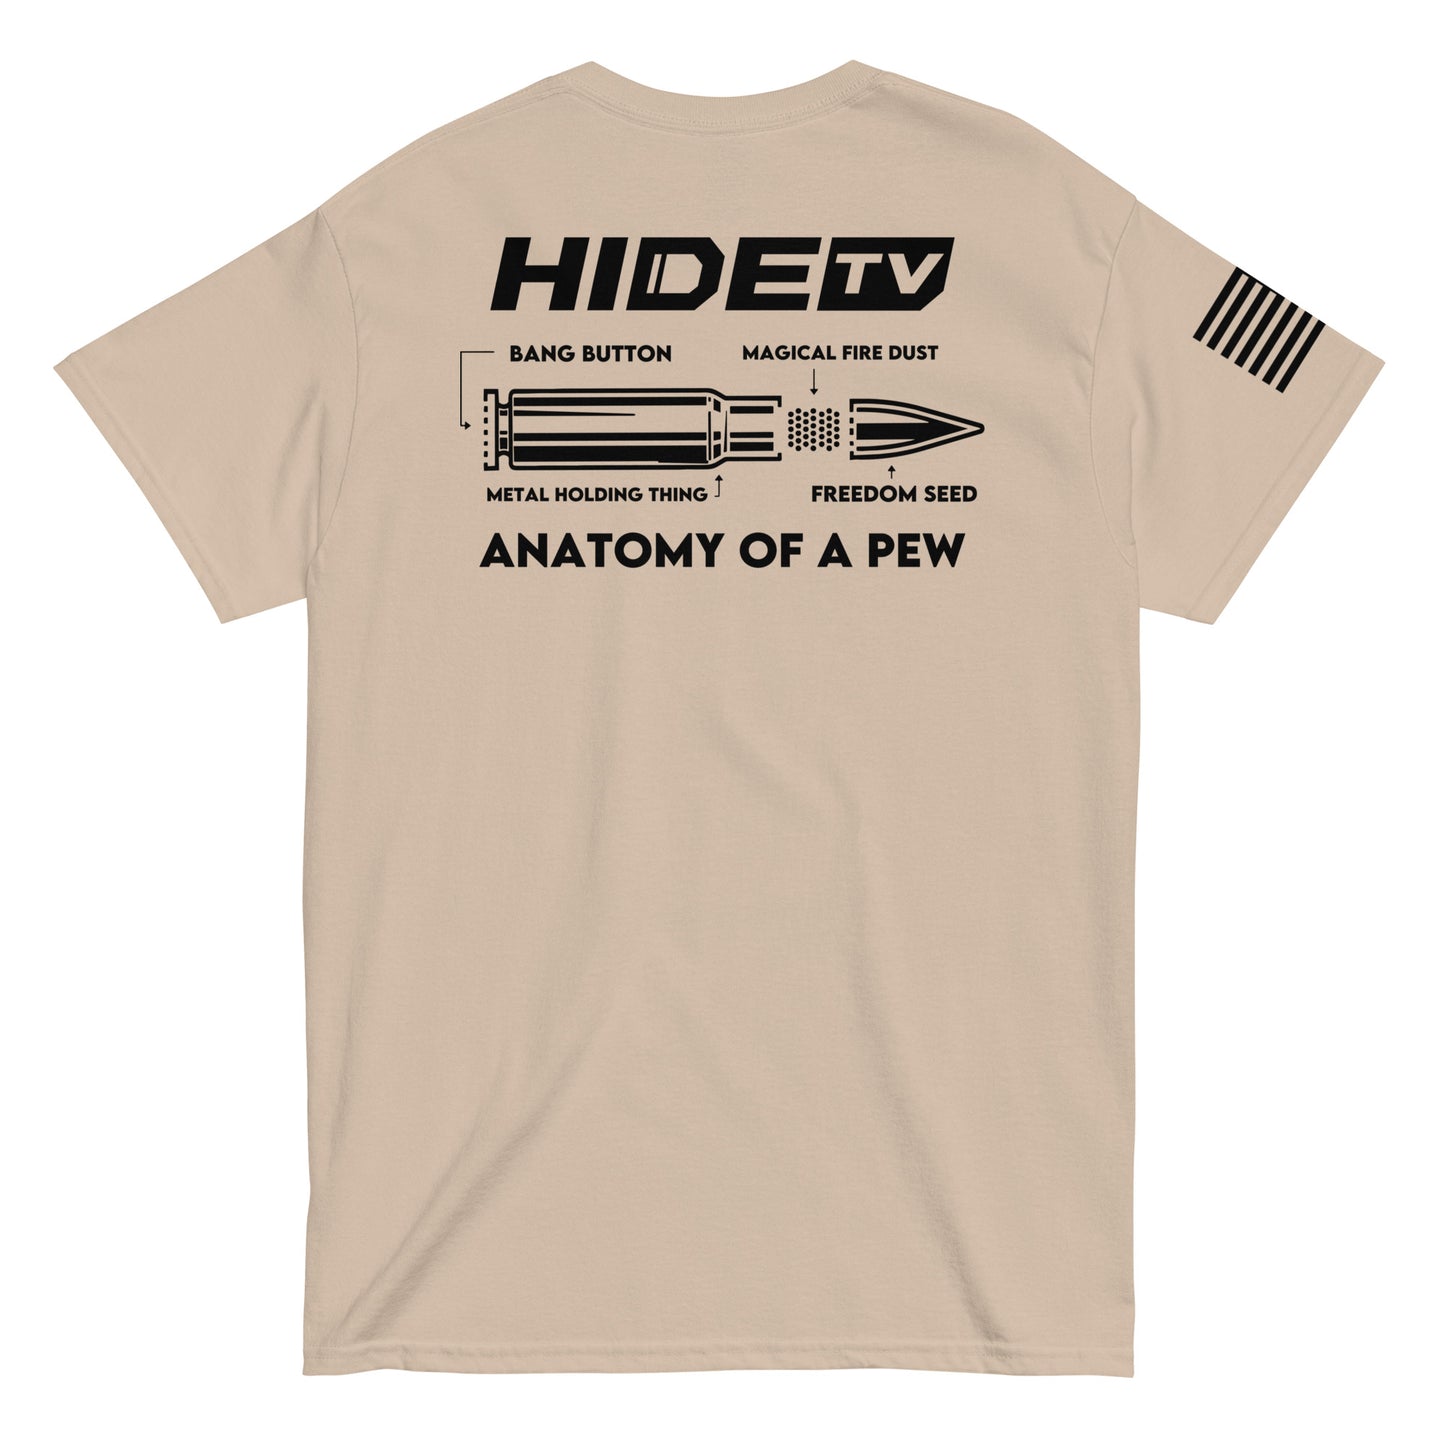 HideTV Anatomy of a Pew Tee